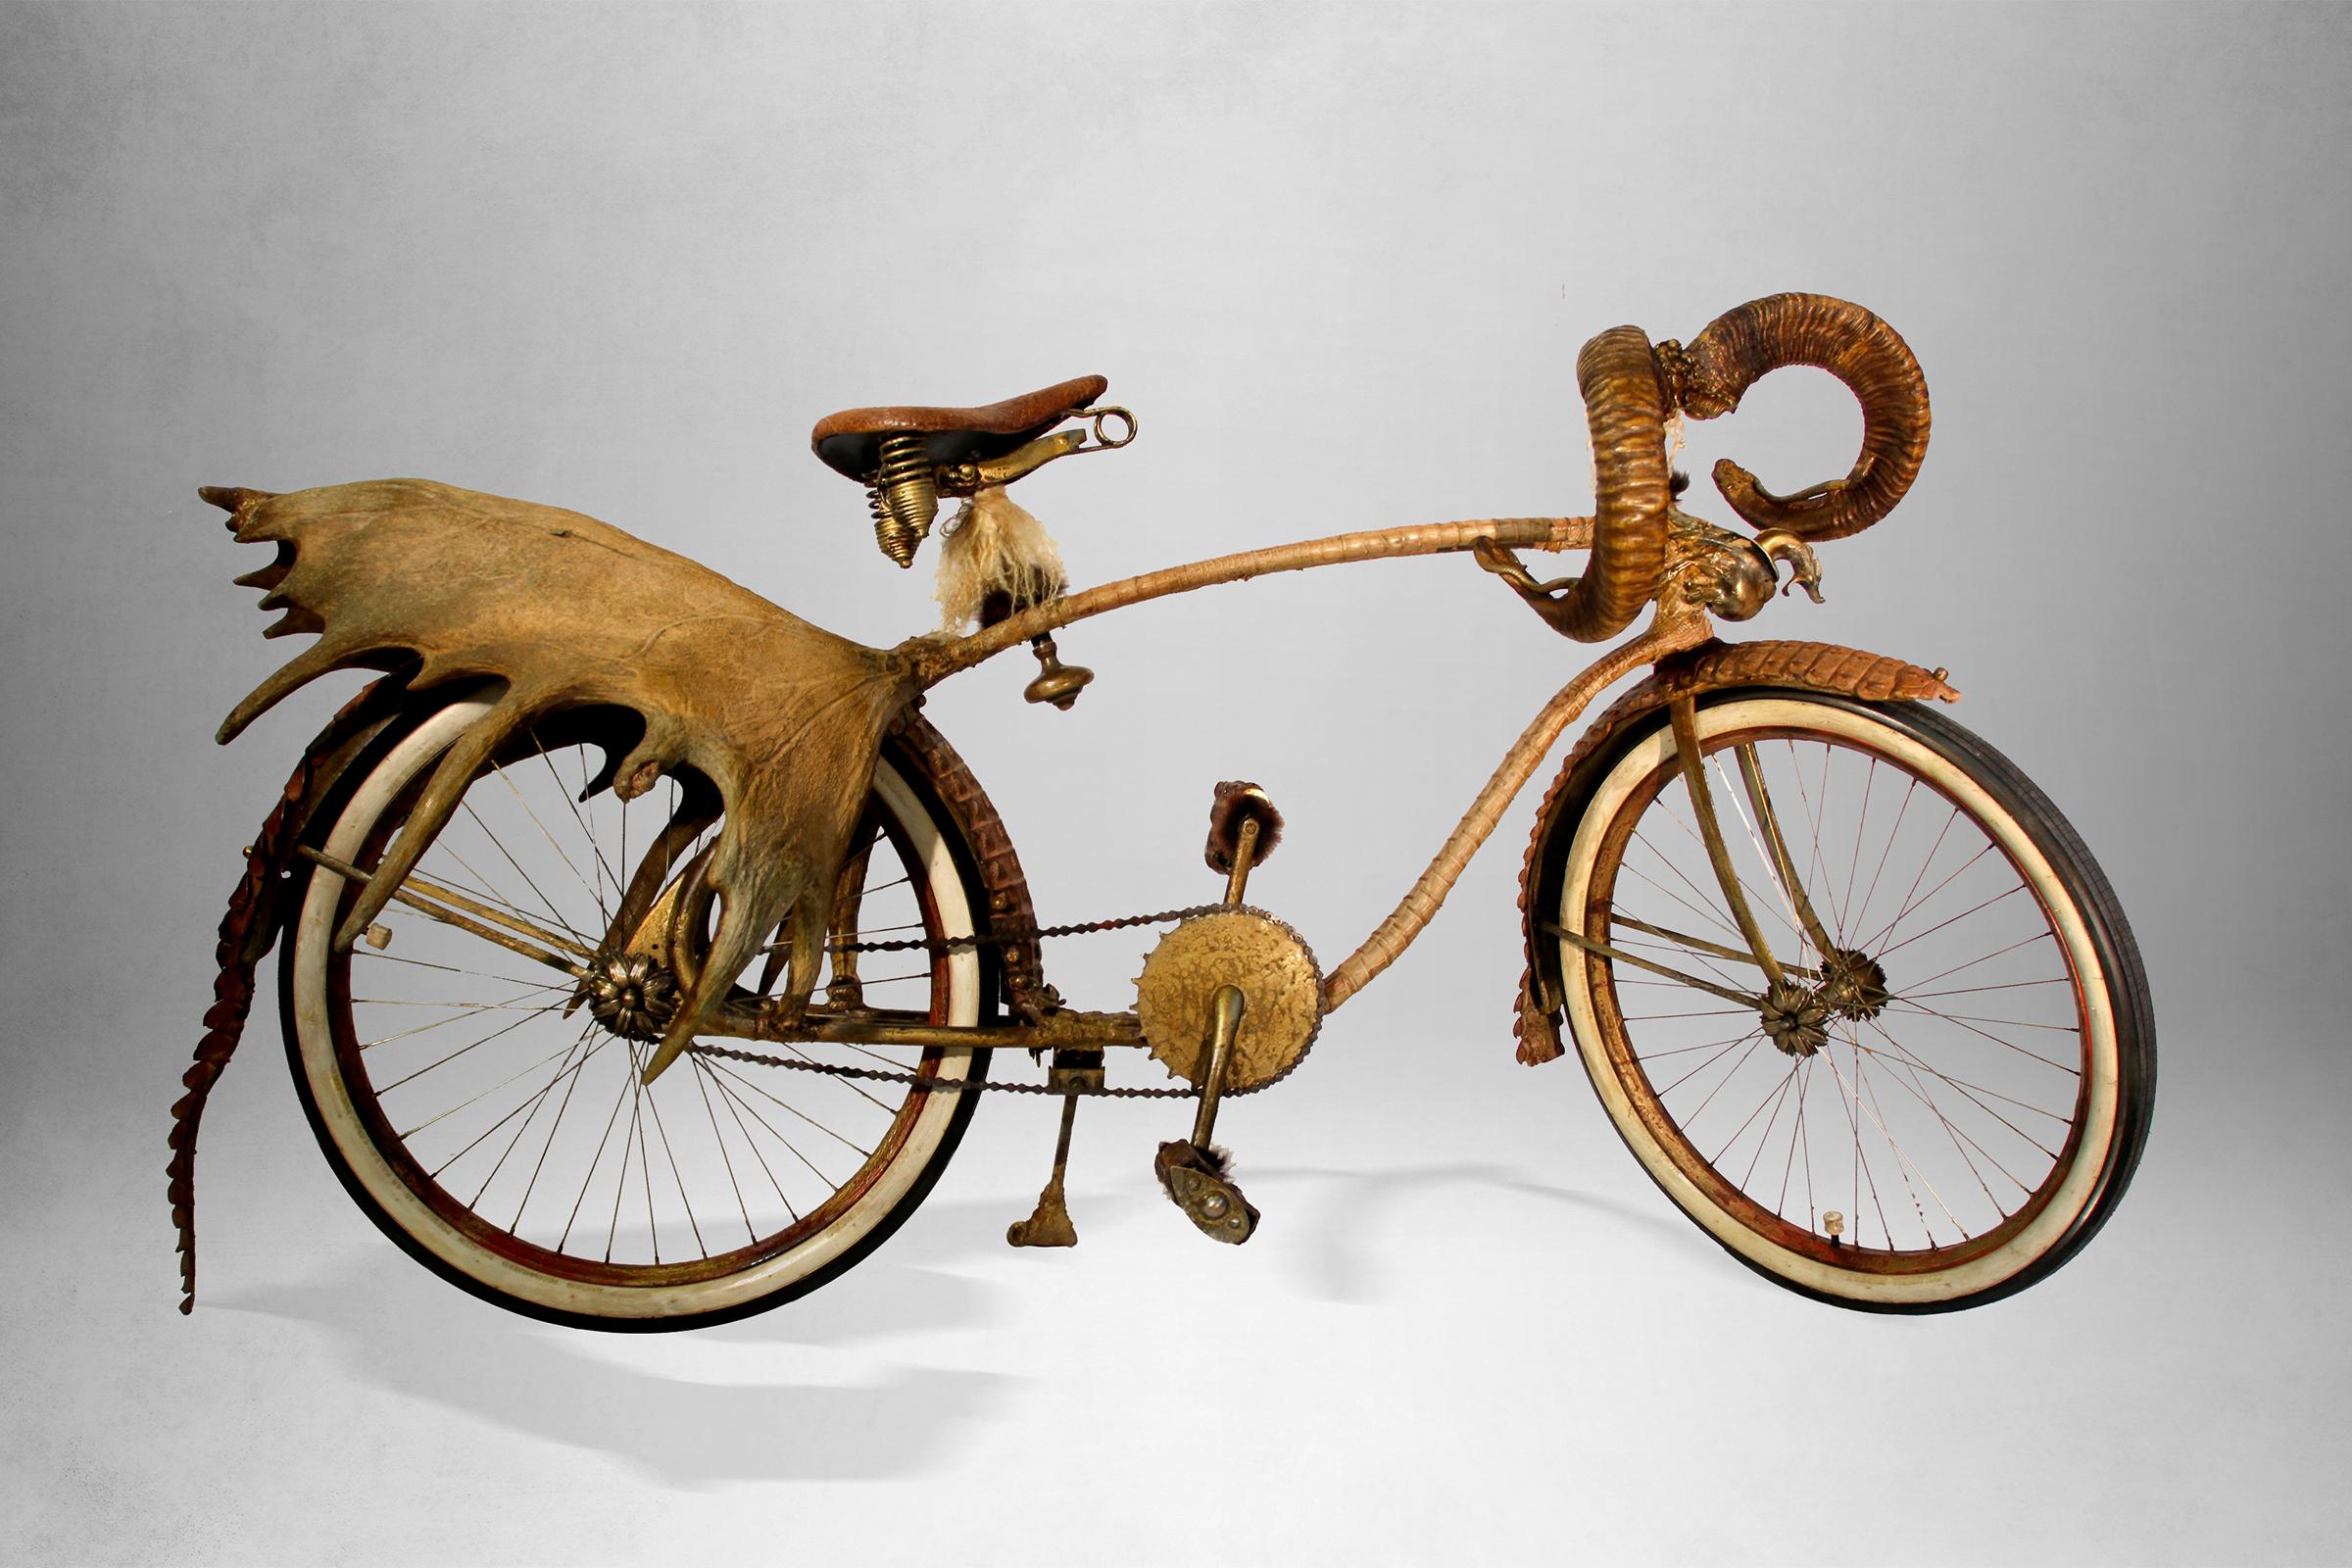 Fahrrad-Safari originales Zwillingsmodell von 1920 in Elgin
deren gesamte Struktur mit Krokodilhaut überzogen ist.
Mit Rentierhörnern und Widderhörnern. Einzelheiten
und wird in Bronze ausgeführt. Außergewöhnlich und einzigartig
Stück,